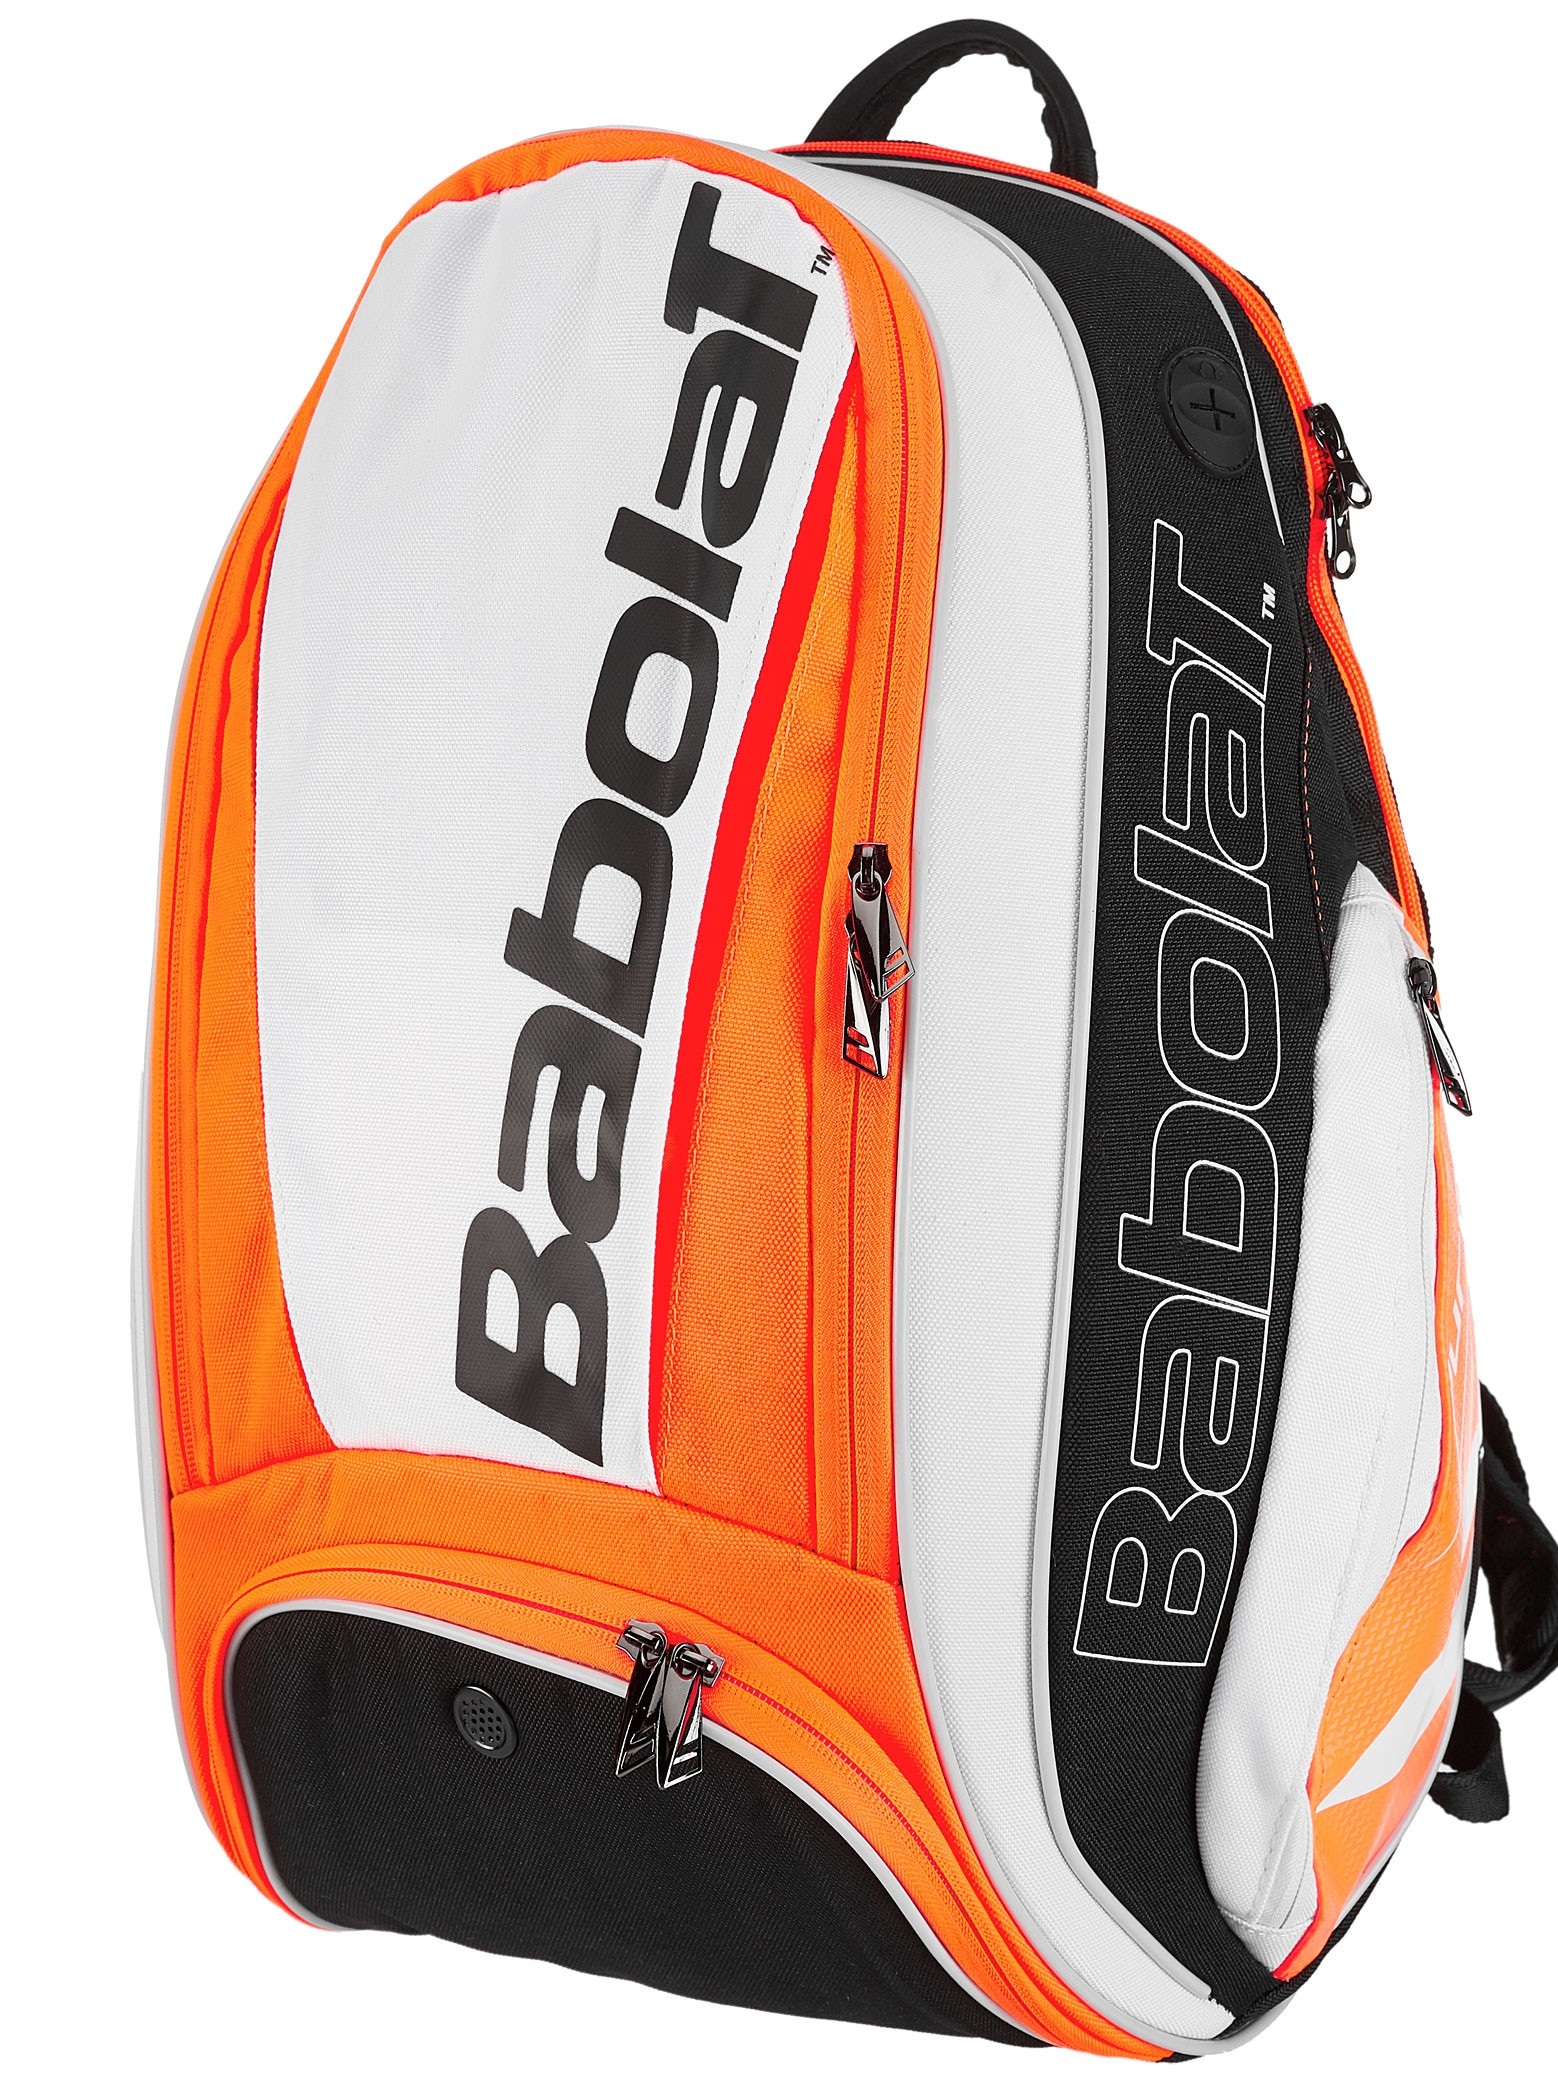 Babolat Back Pack Pure Line,
Con su diseño aerodinámico y elegante, Pure Backpack ofrece una buena cantidad de espacio para el jugador en movimiento.
Precio: $ 1,895. pesos.
(Precio aplica solo para venta online).